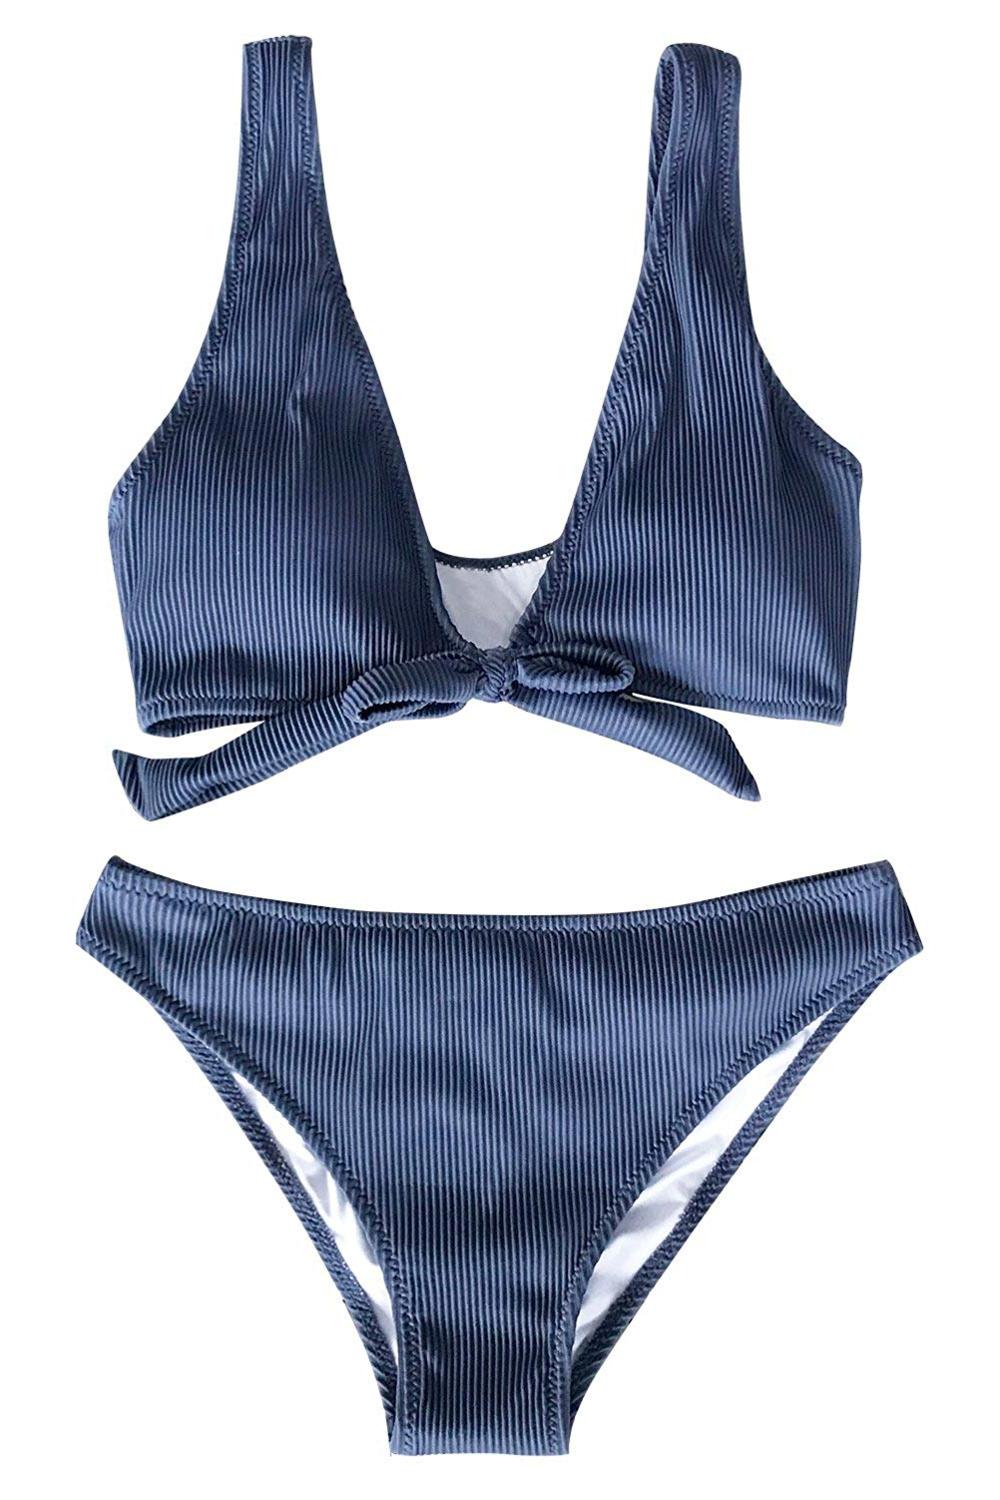 CUPSHE Deep Love Solid Blue Bikini Set Tie Front Beach Swimwear, Blue